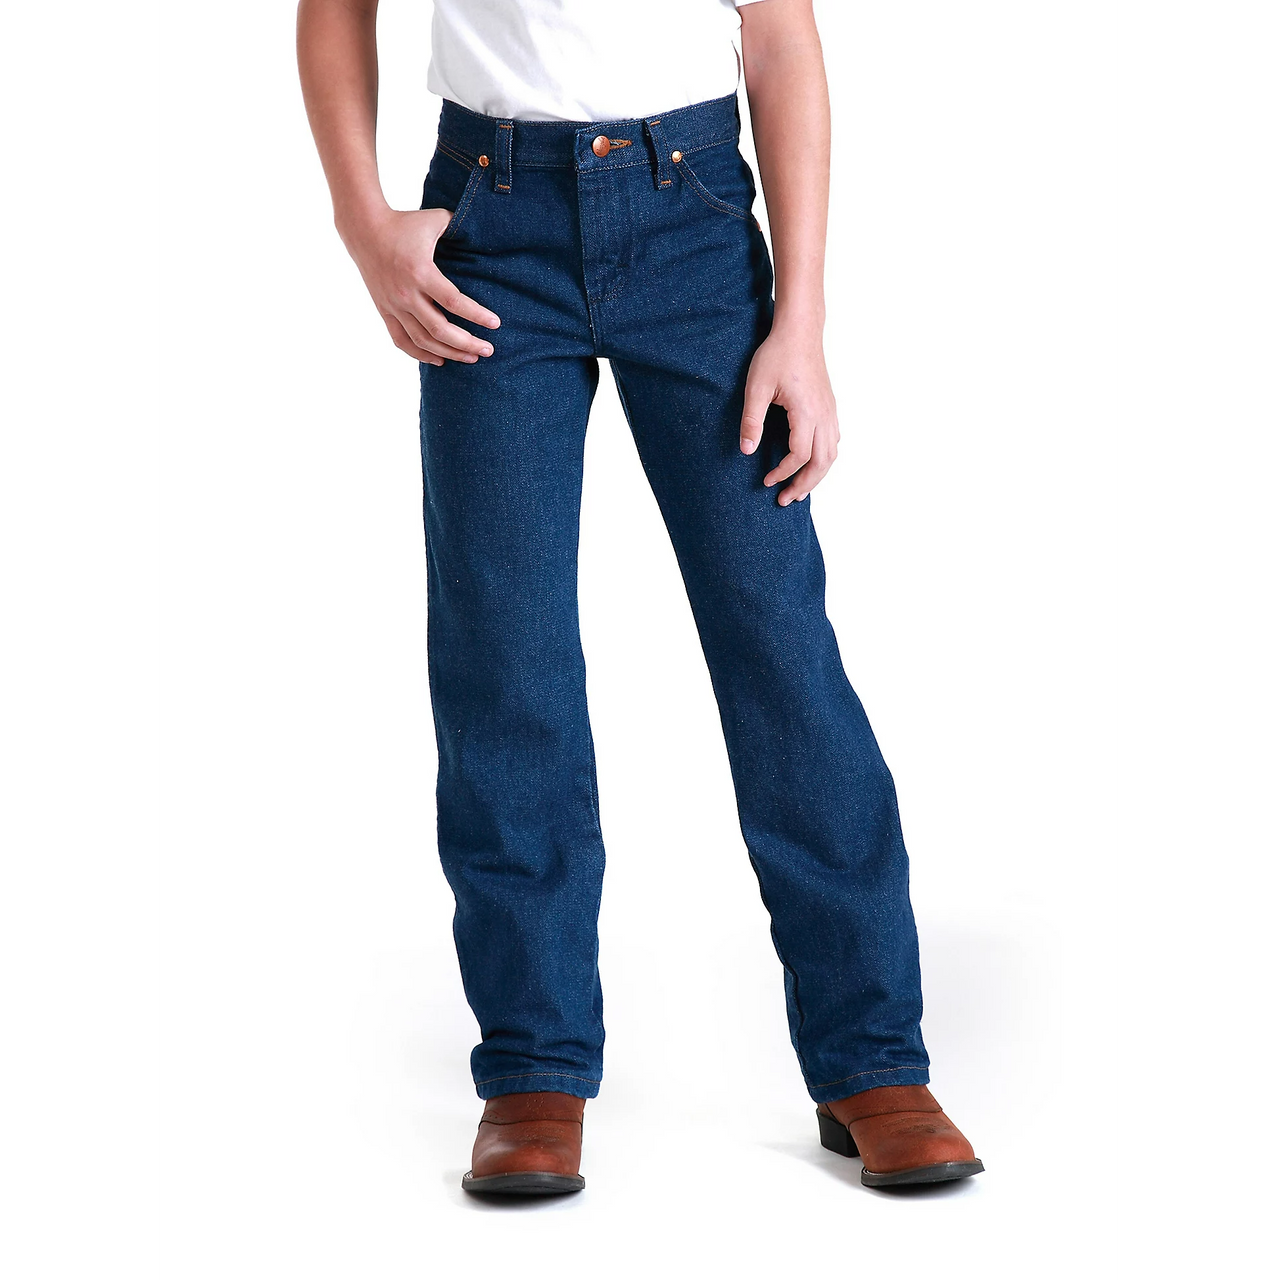 Wrangler Boys Cowboy Cut Original Fit Jeans - Prewashed Indigo